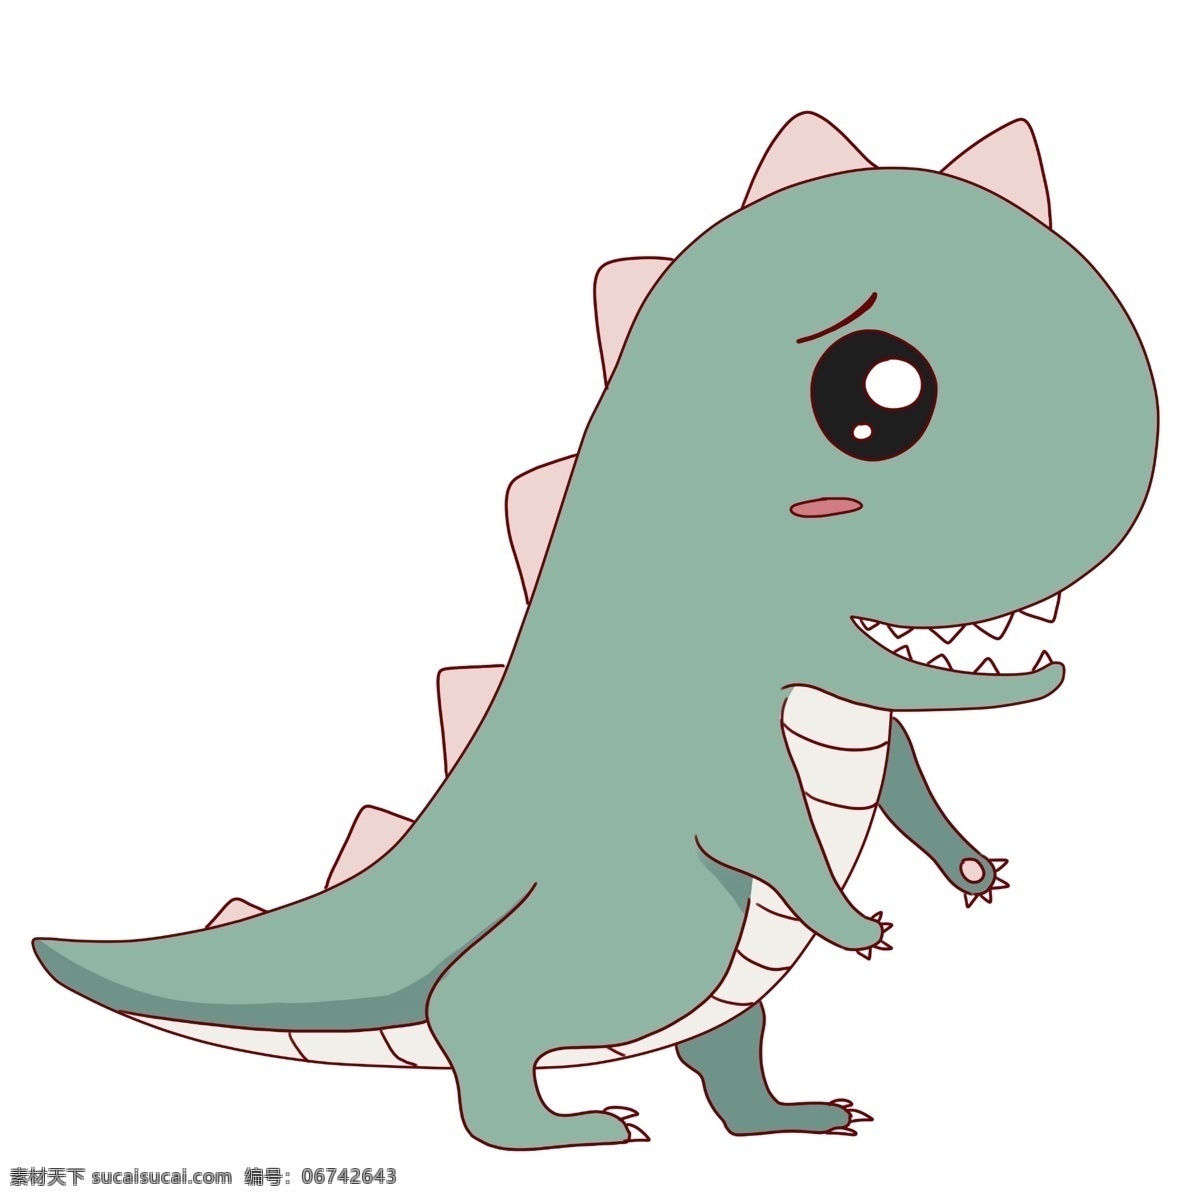 可爱 幼 龙 小 动物 插画 可爱恐龙 恐龙 活泼 卡通绿色恐龙 可爱恐龙插画 幼龙小动物 卡通插画